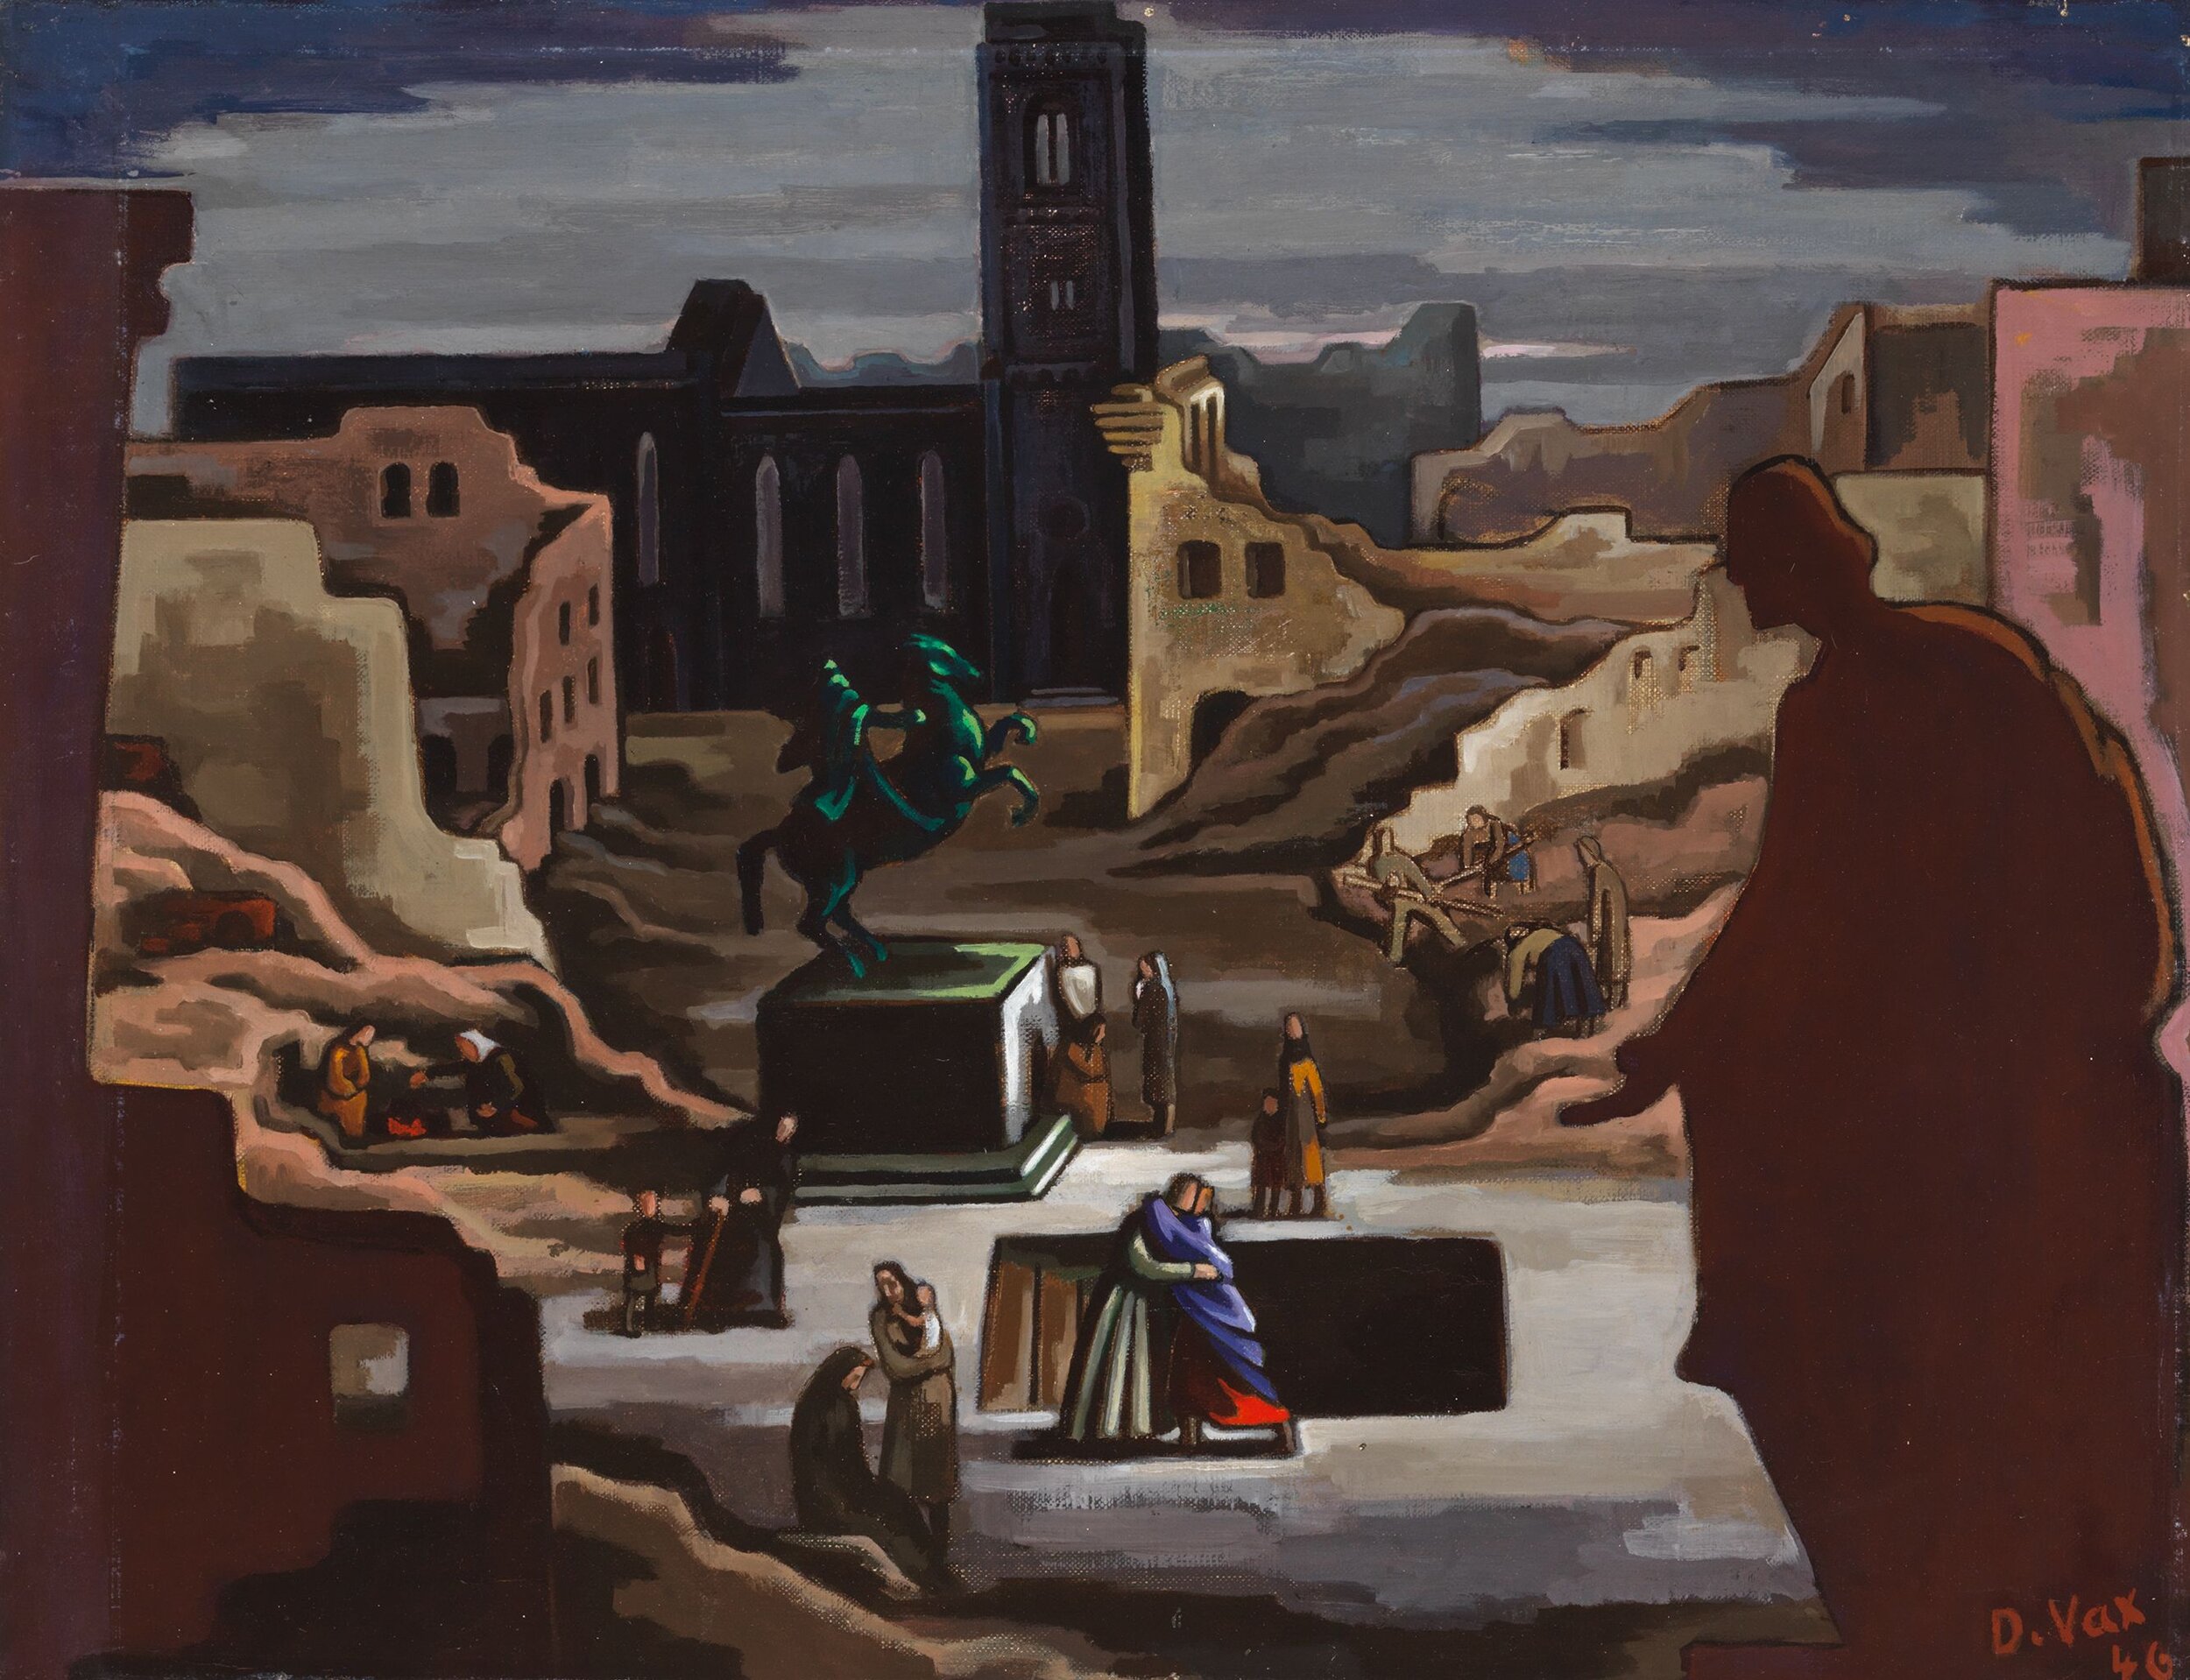 Dore Meyer-Vax, Impression 1945, 1945/46, Öl auf Leinwand auf Karton, 46,5 x 59 cm, © Kunstvilla, Annette Kradisch